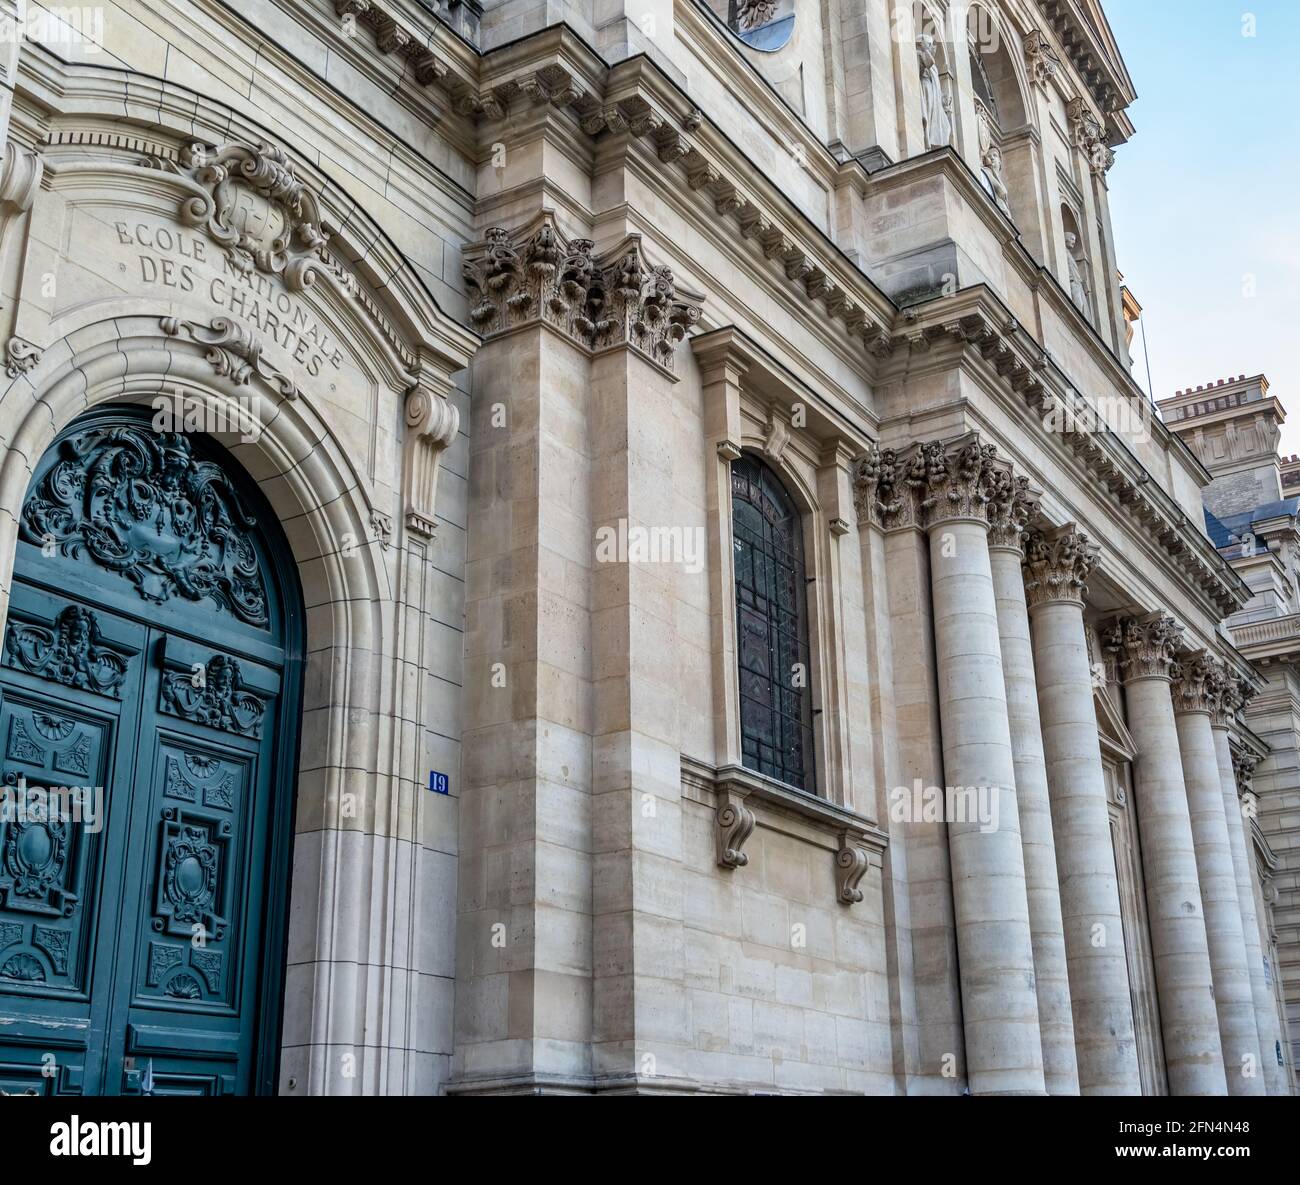 Das historische Gebäude der Sorbonne Universität (Sorbonne Université), einer öffentlichen Forschungsuniversität in Paris, Frankreich. Stockfoto